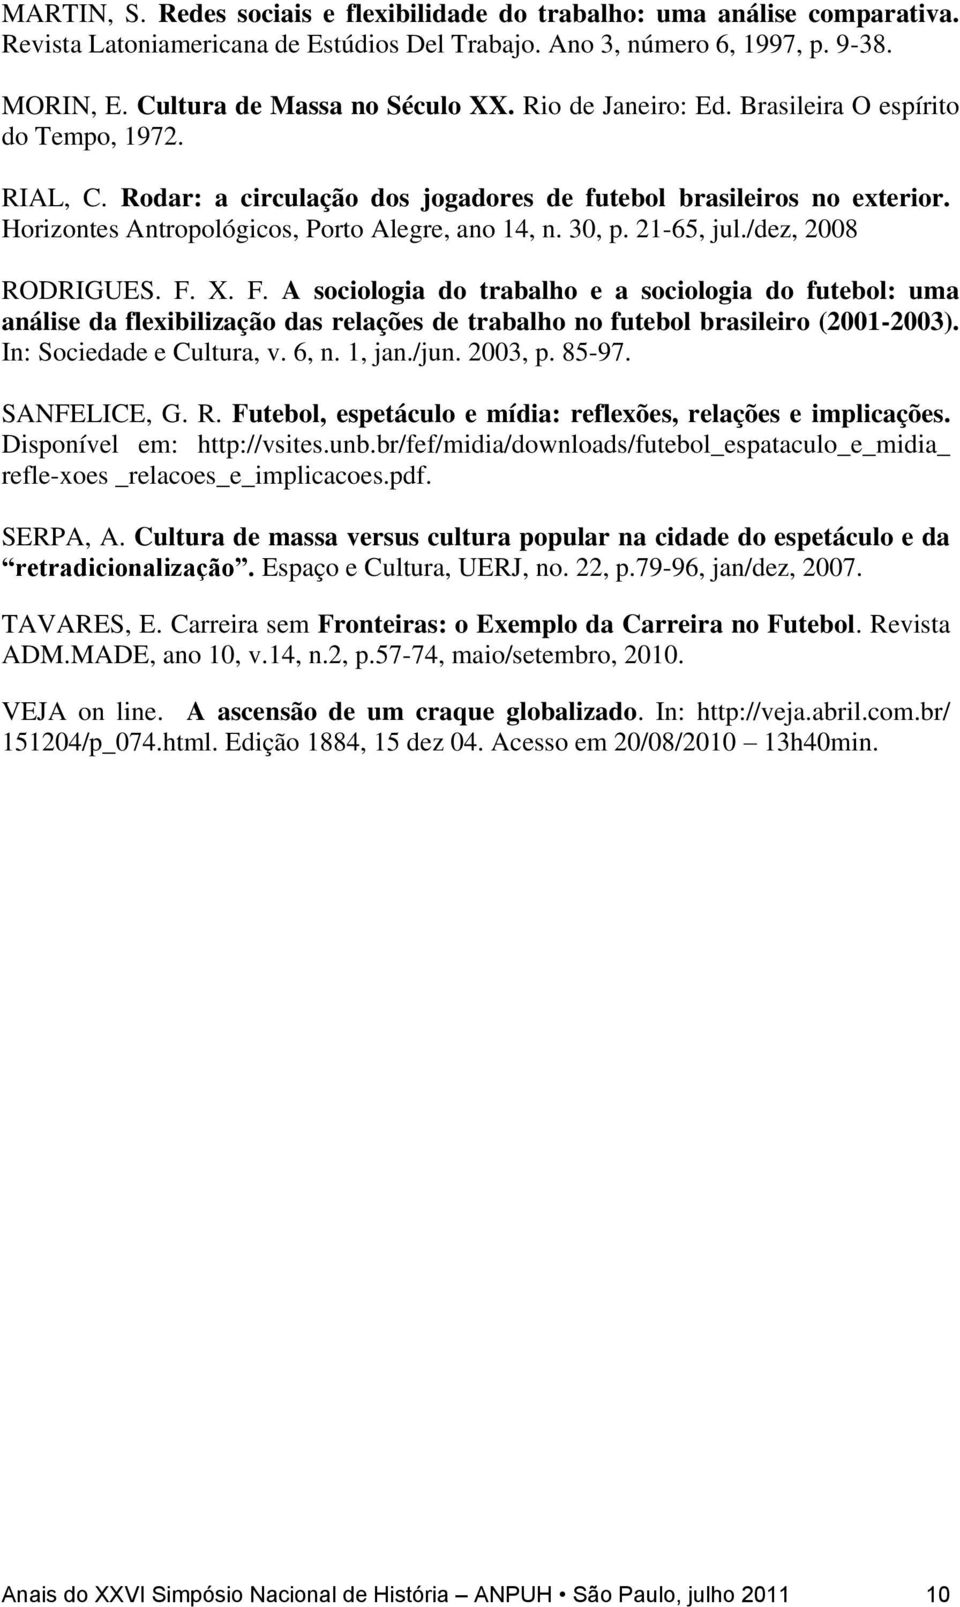 21-65, jul./dez, 2008 RODRIGUES. F. X. F. A sociologia do trabalho e a sociologia do futebol: uma análise da flexibilização das relações de trabalho no futebol brasileiro (2001-2003).